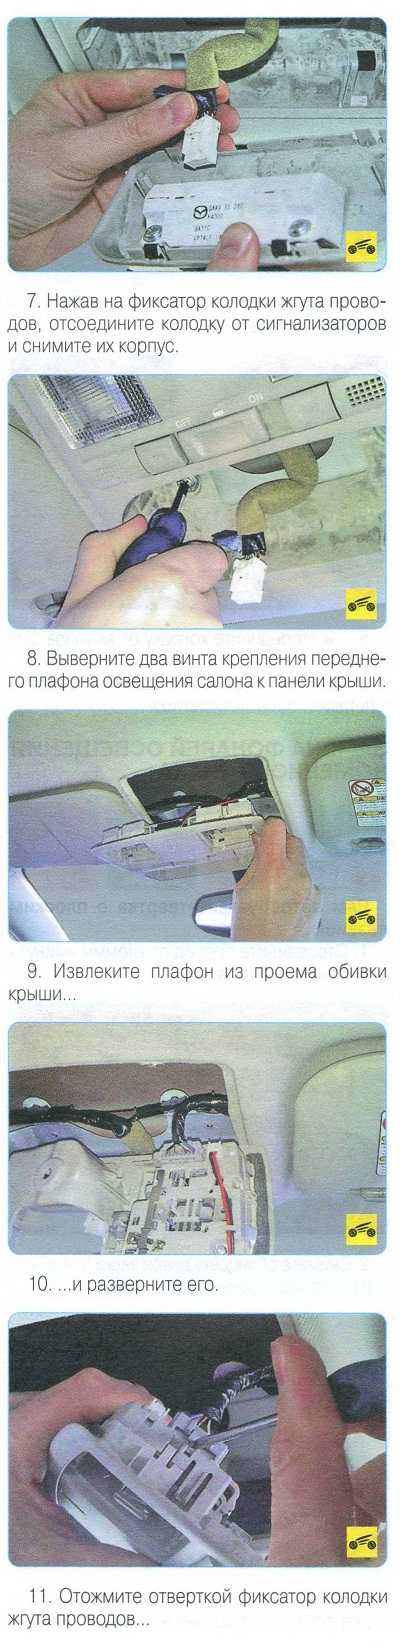 Как правильно снять плафон освещения салона своими руками? 3 примера для отечественных автомобилей и иномарок